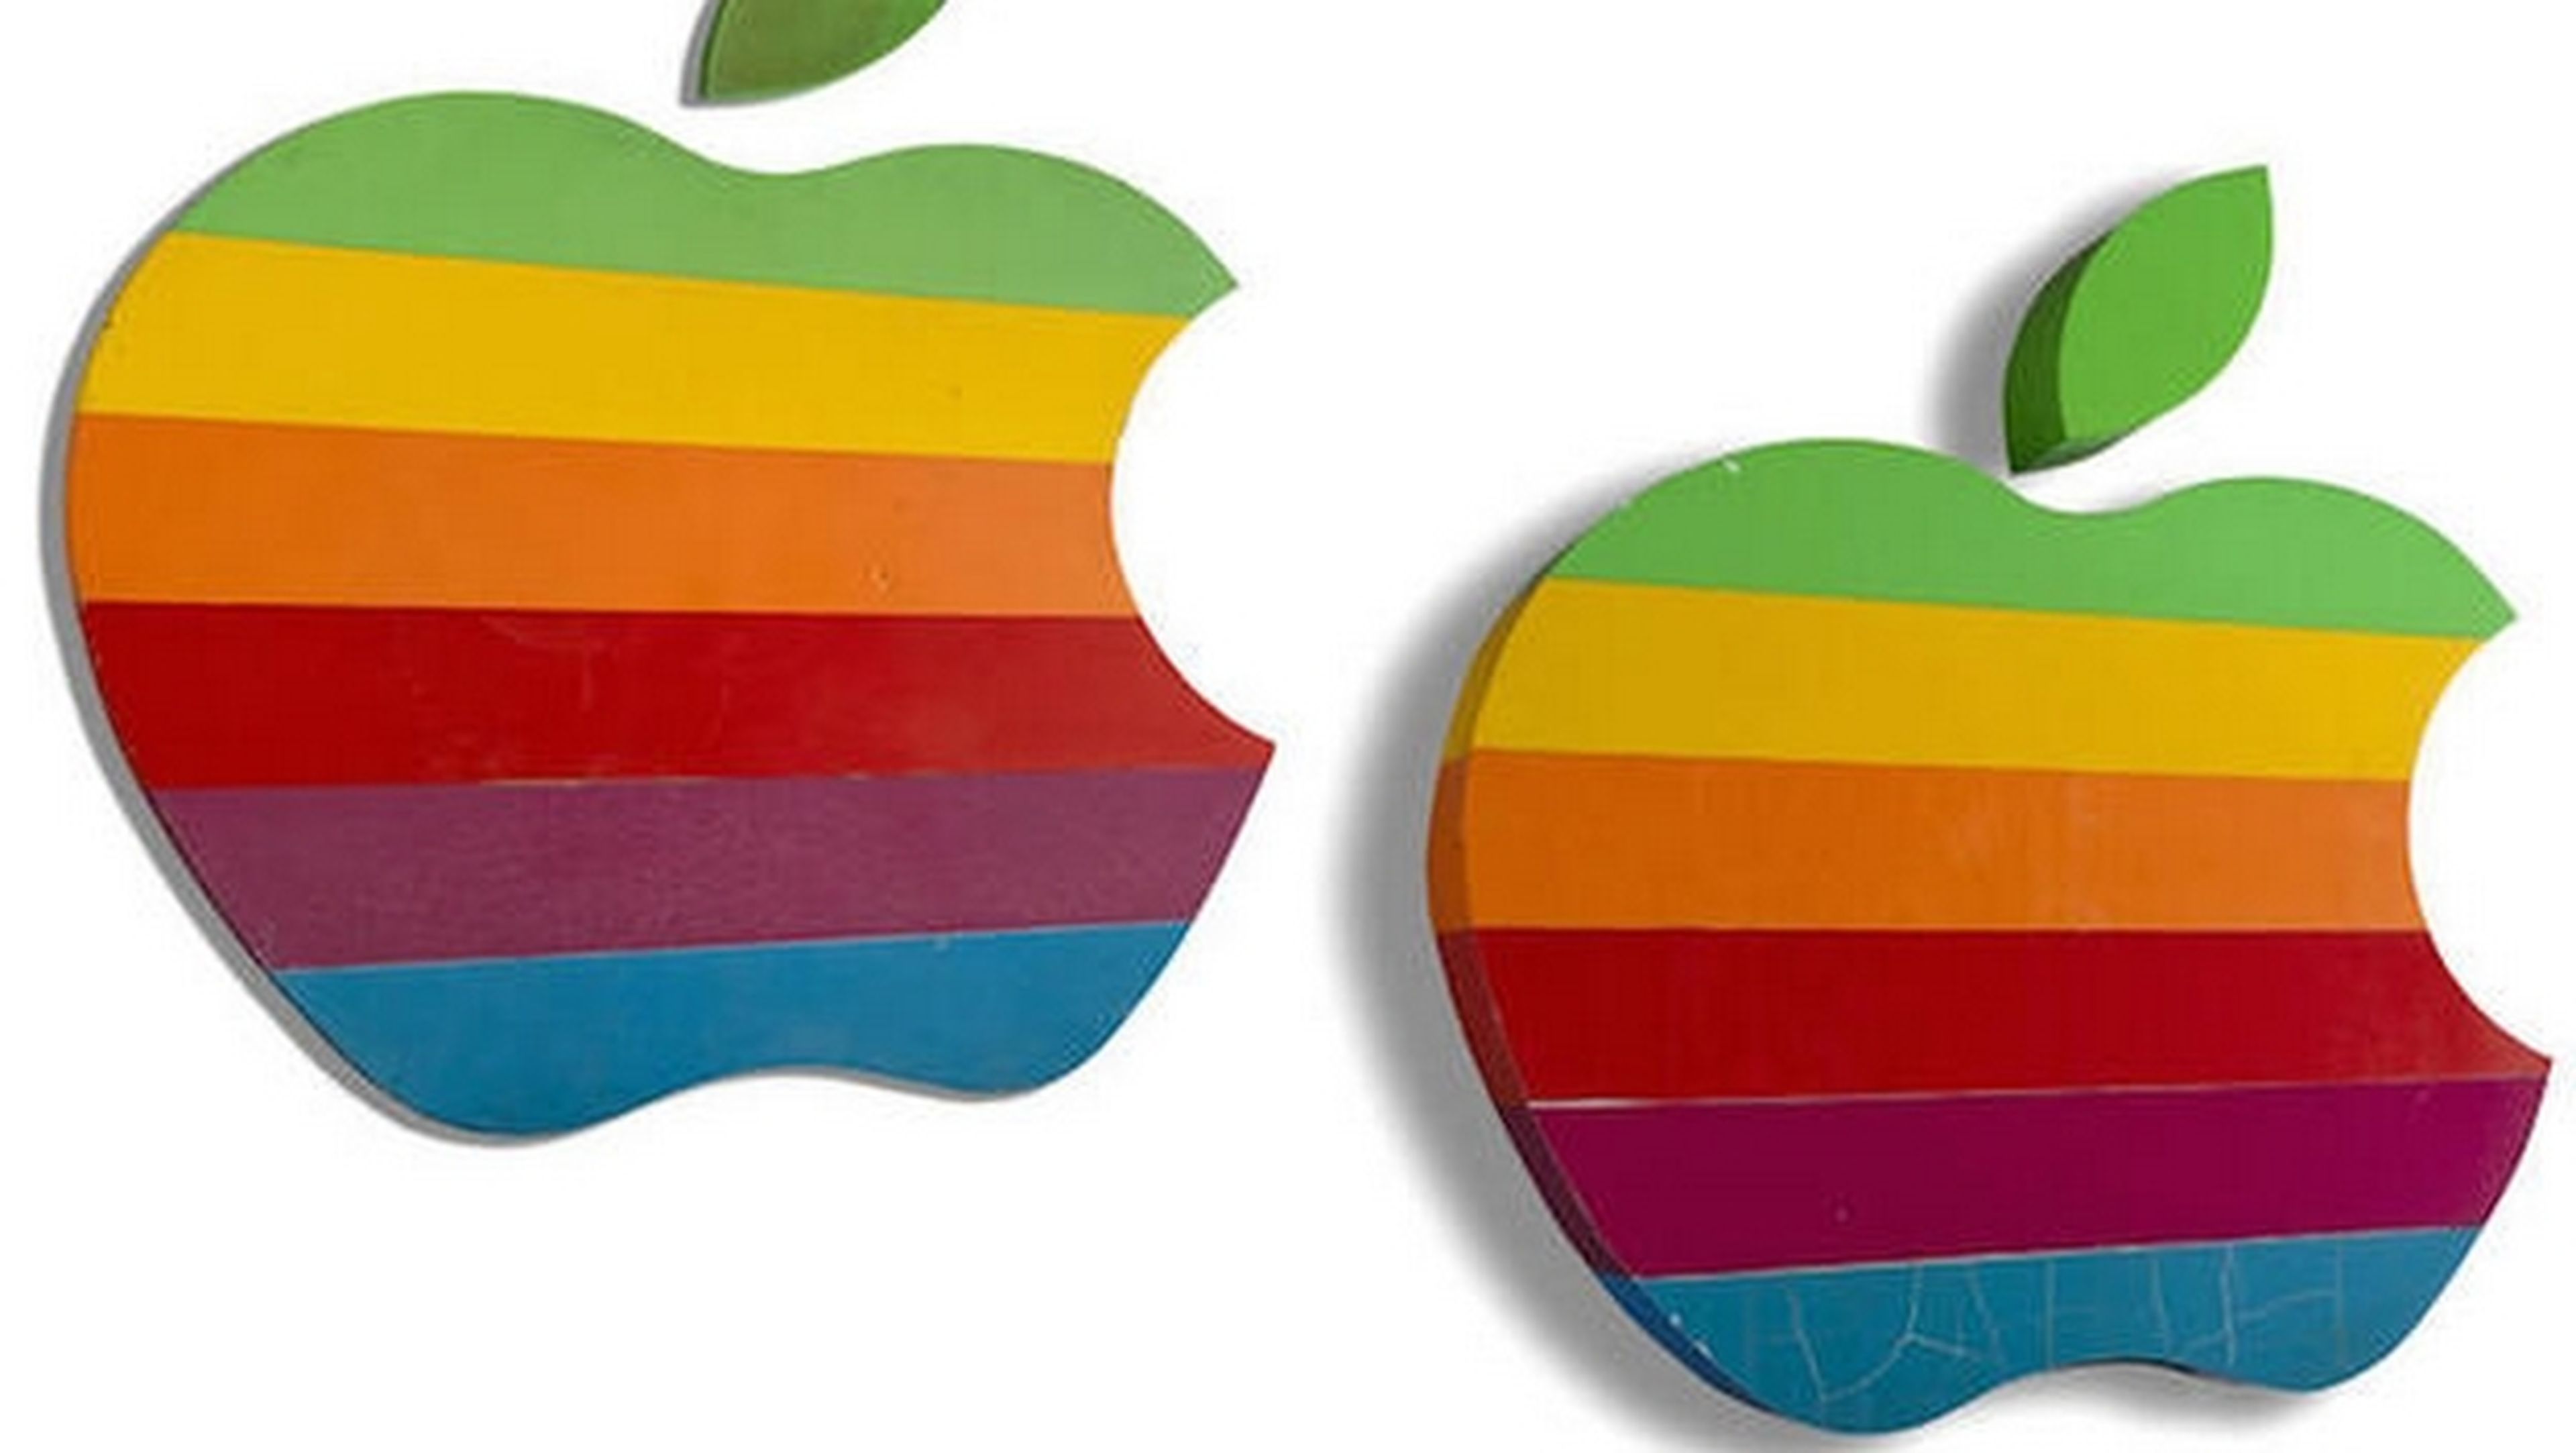 Subastan carteles originales logo de Apple arco iris. La puja empieza en 10.000 dólares.